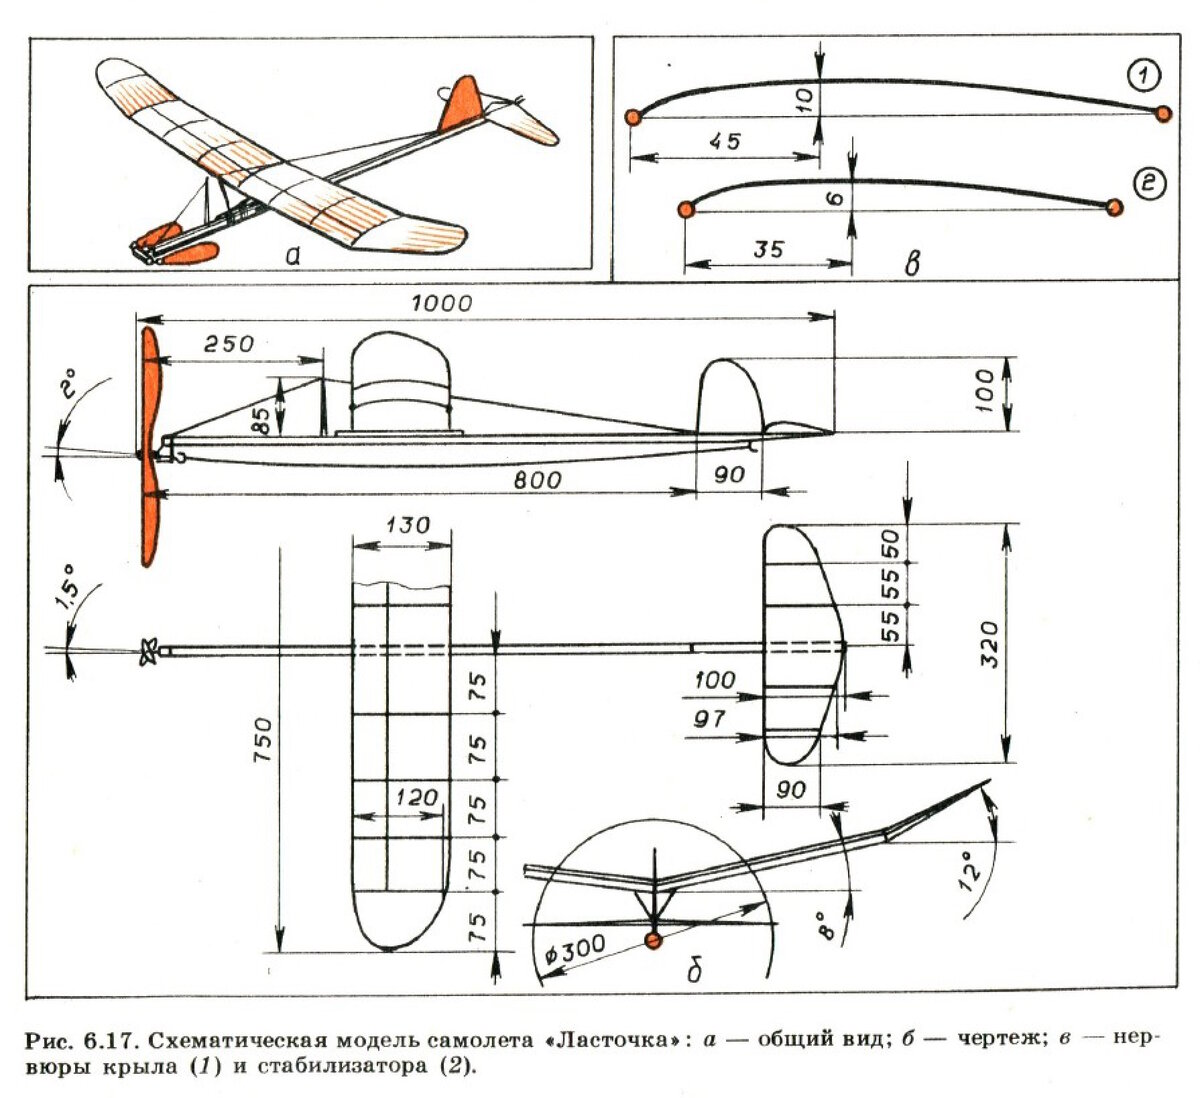 Как сделать комнатную схематическую резиномоторную модель самолета класса К-2